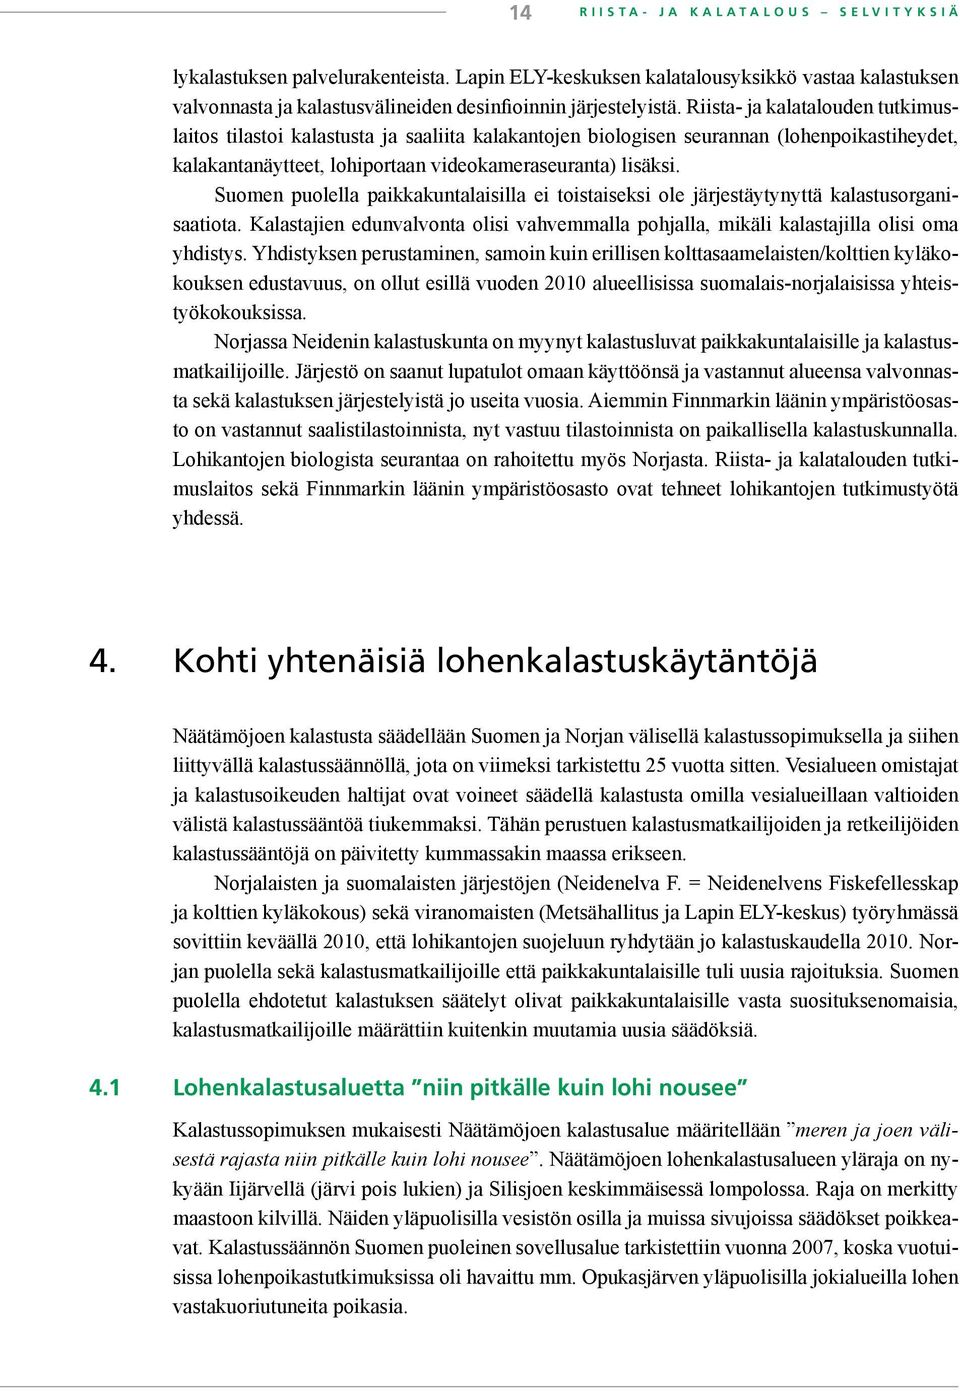 Suomen puolella paikkakuntalaisilla ei toistaiseksi ole järjestäytynyttä kalastusorganisaatiota. Kalastajien edunvalvonta olisi vahvemmalla pohjalla, mikäli kalastajilla olisi oma yhdistys.